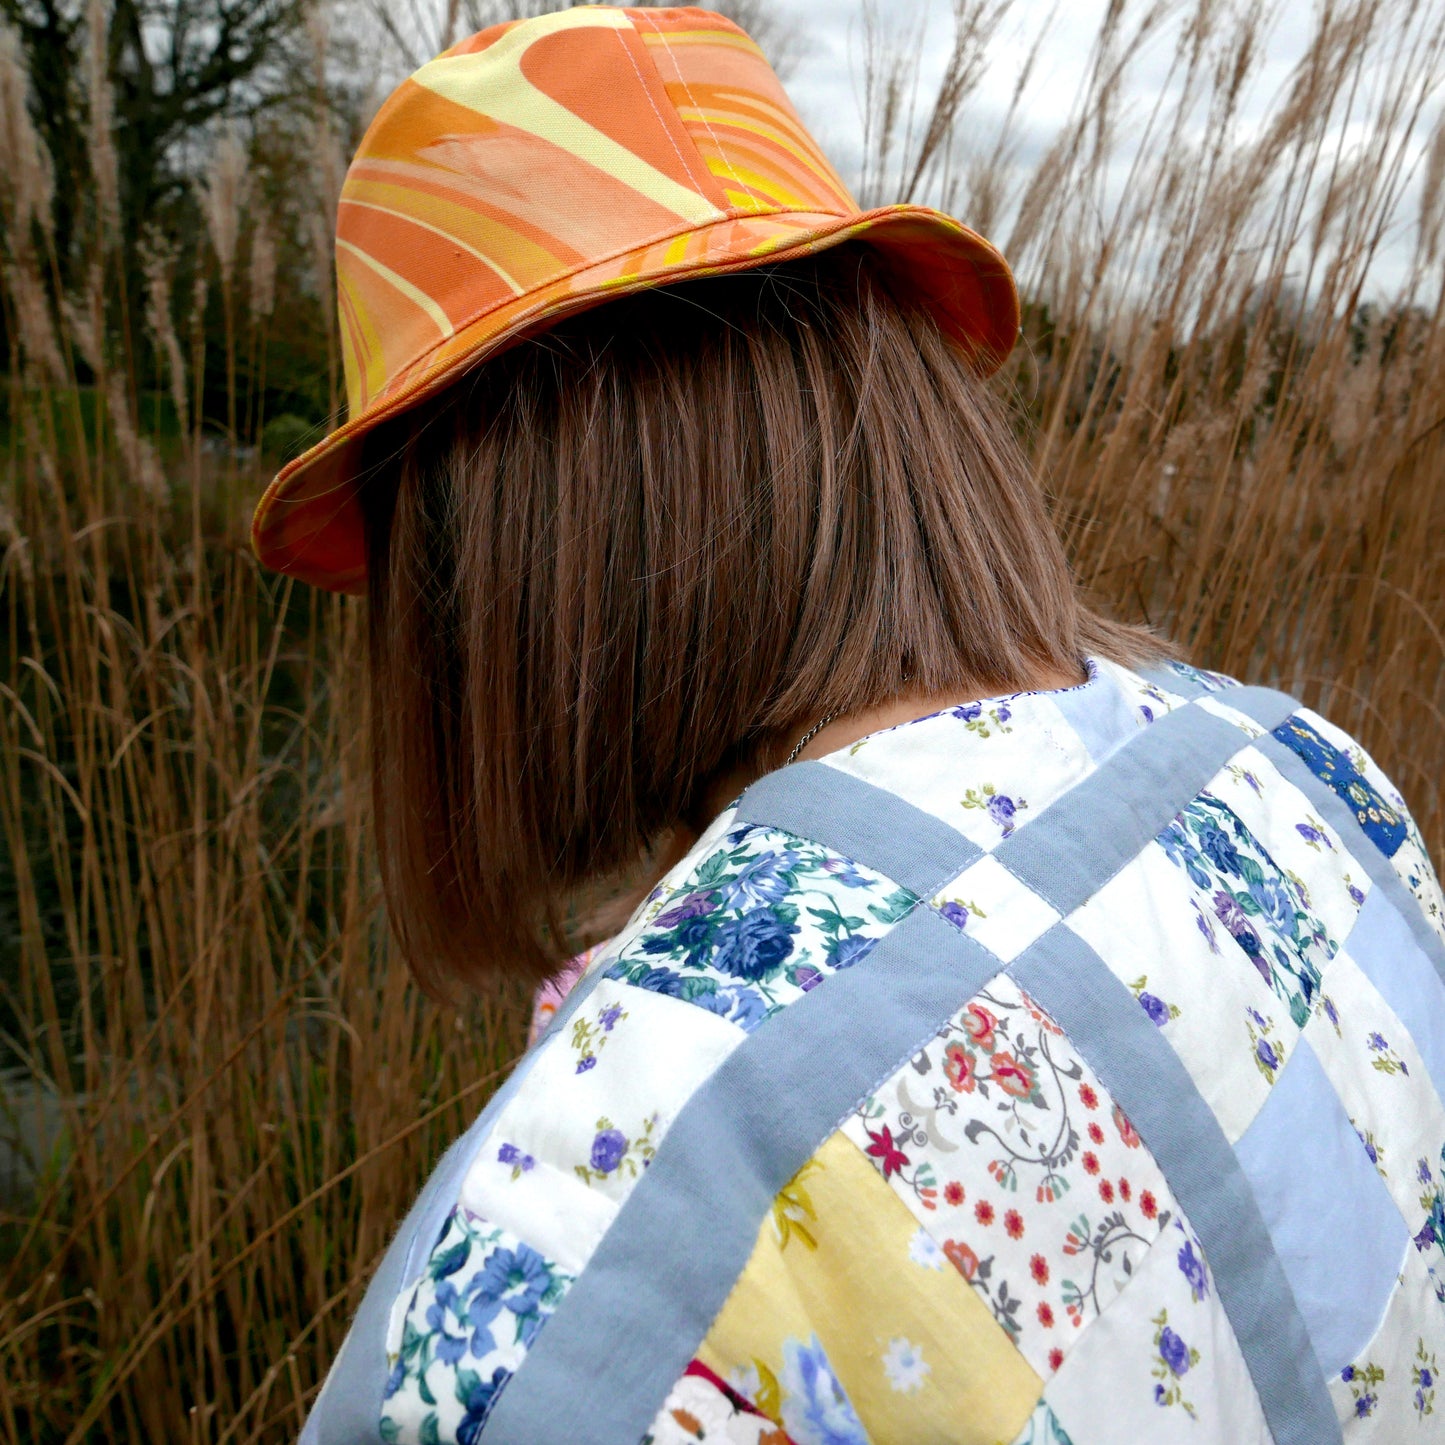 Unisex Groovy Stripe Bucket Hat in Two Colour-ways